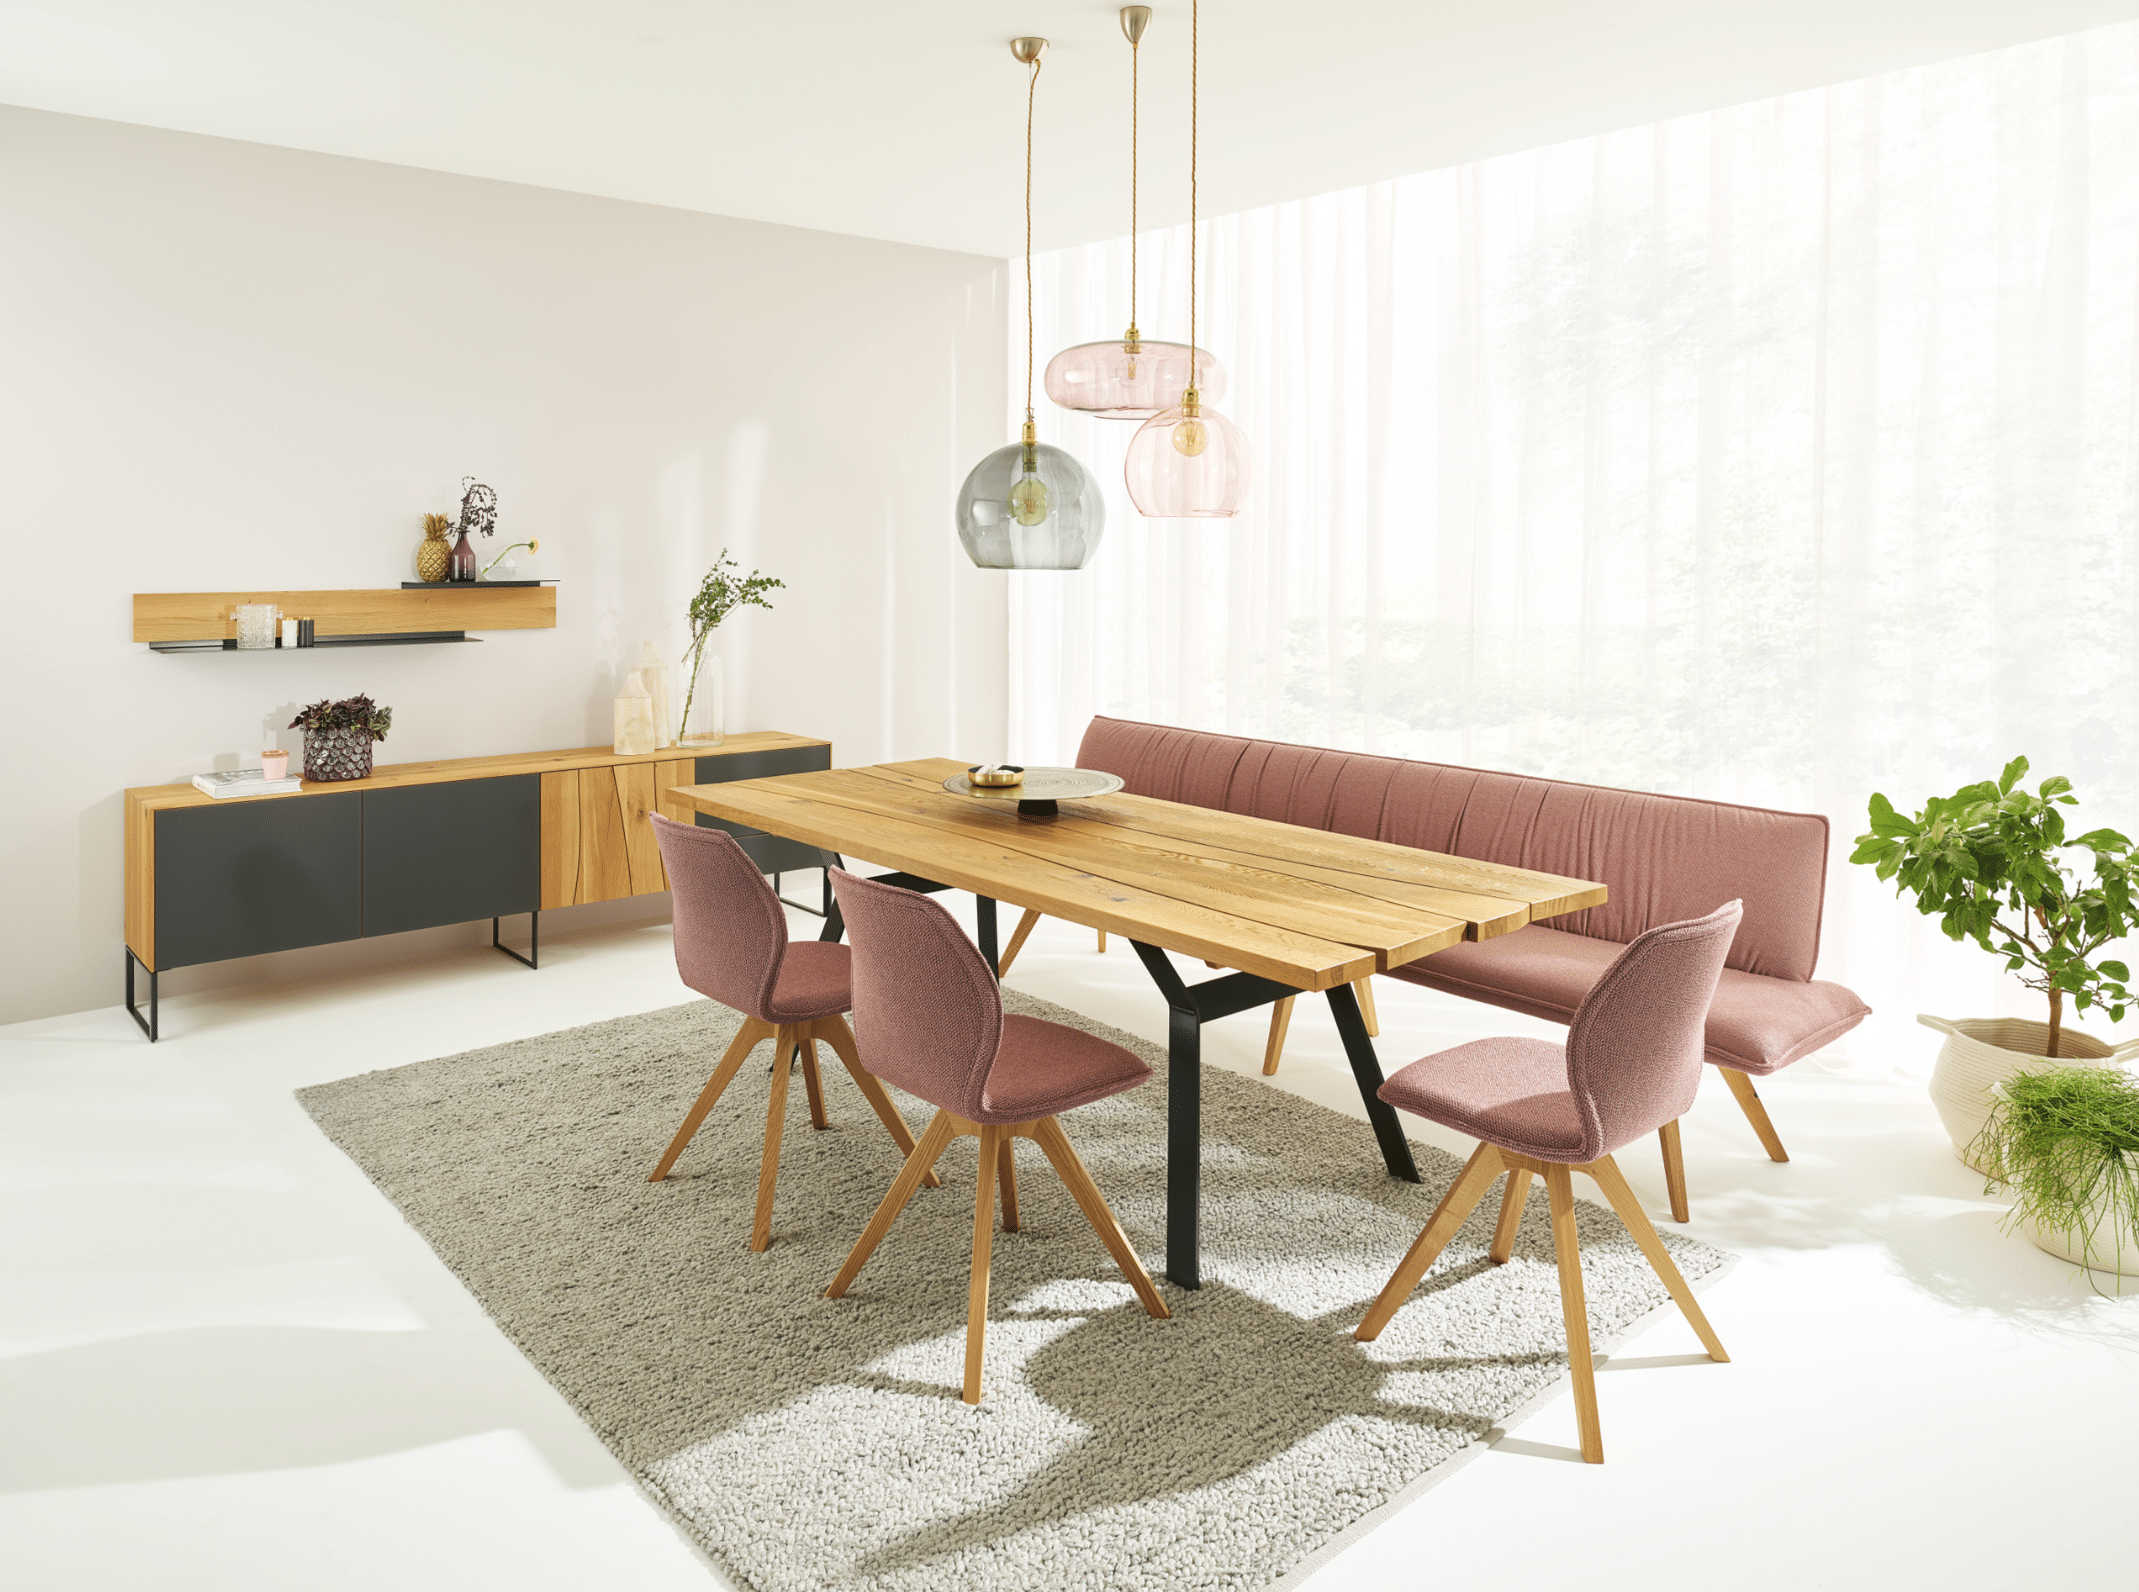 WOHNHAUS Grill & Ronacher zeigt eine moderne Essgruppe von ANREI, bestehend aus einem Esstisch aus dem Holz der Asteiche, sowie dazupassendes Sideboard samt Wandboard und freiliegender Teppich.